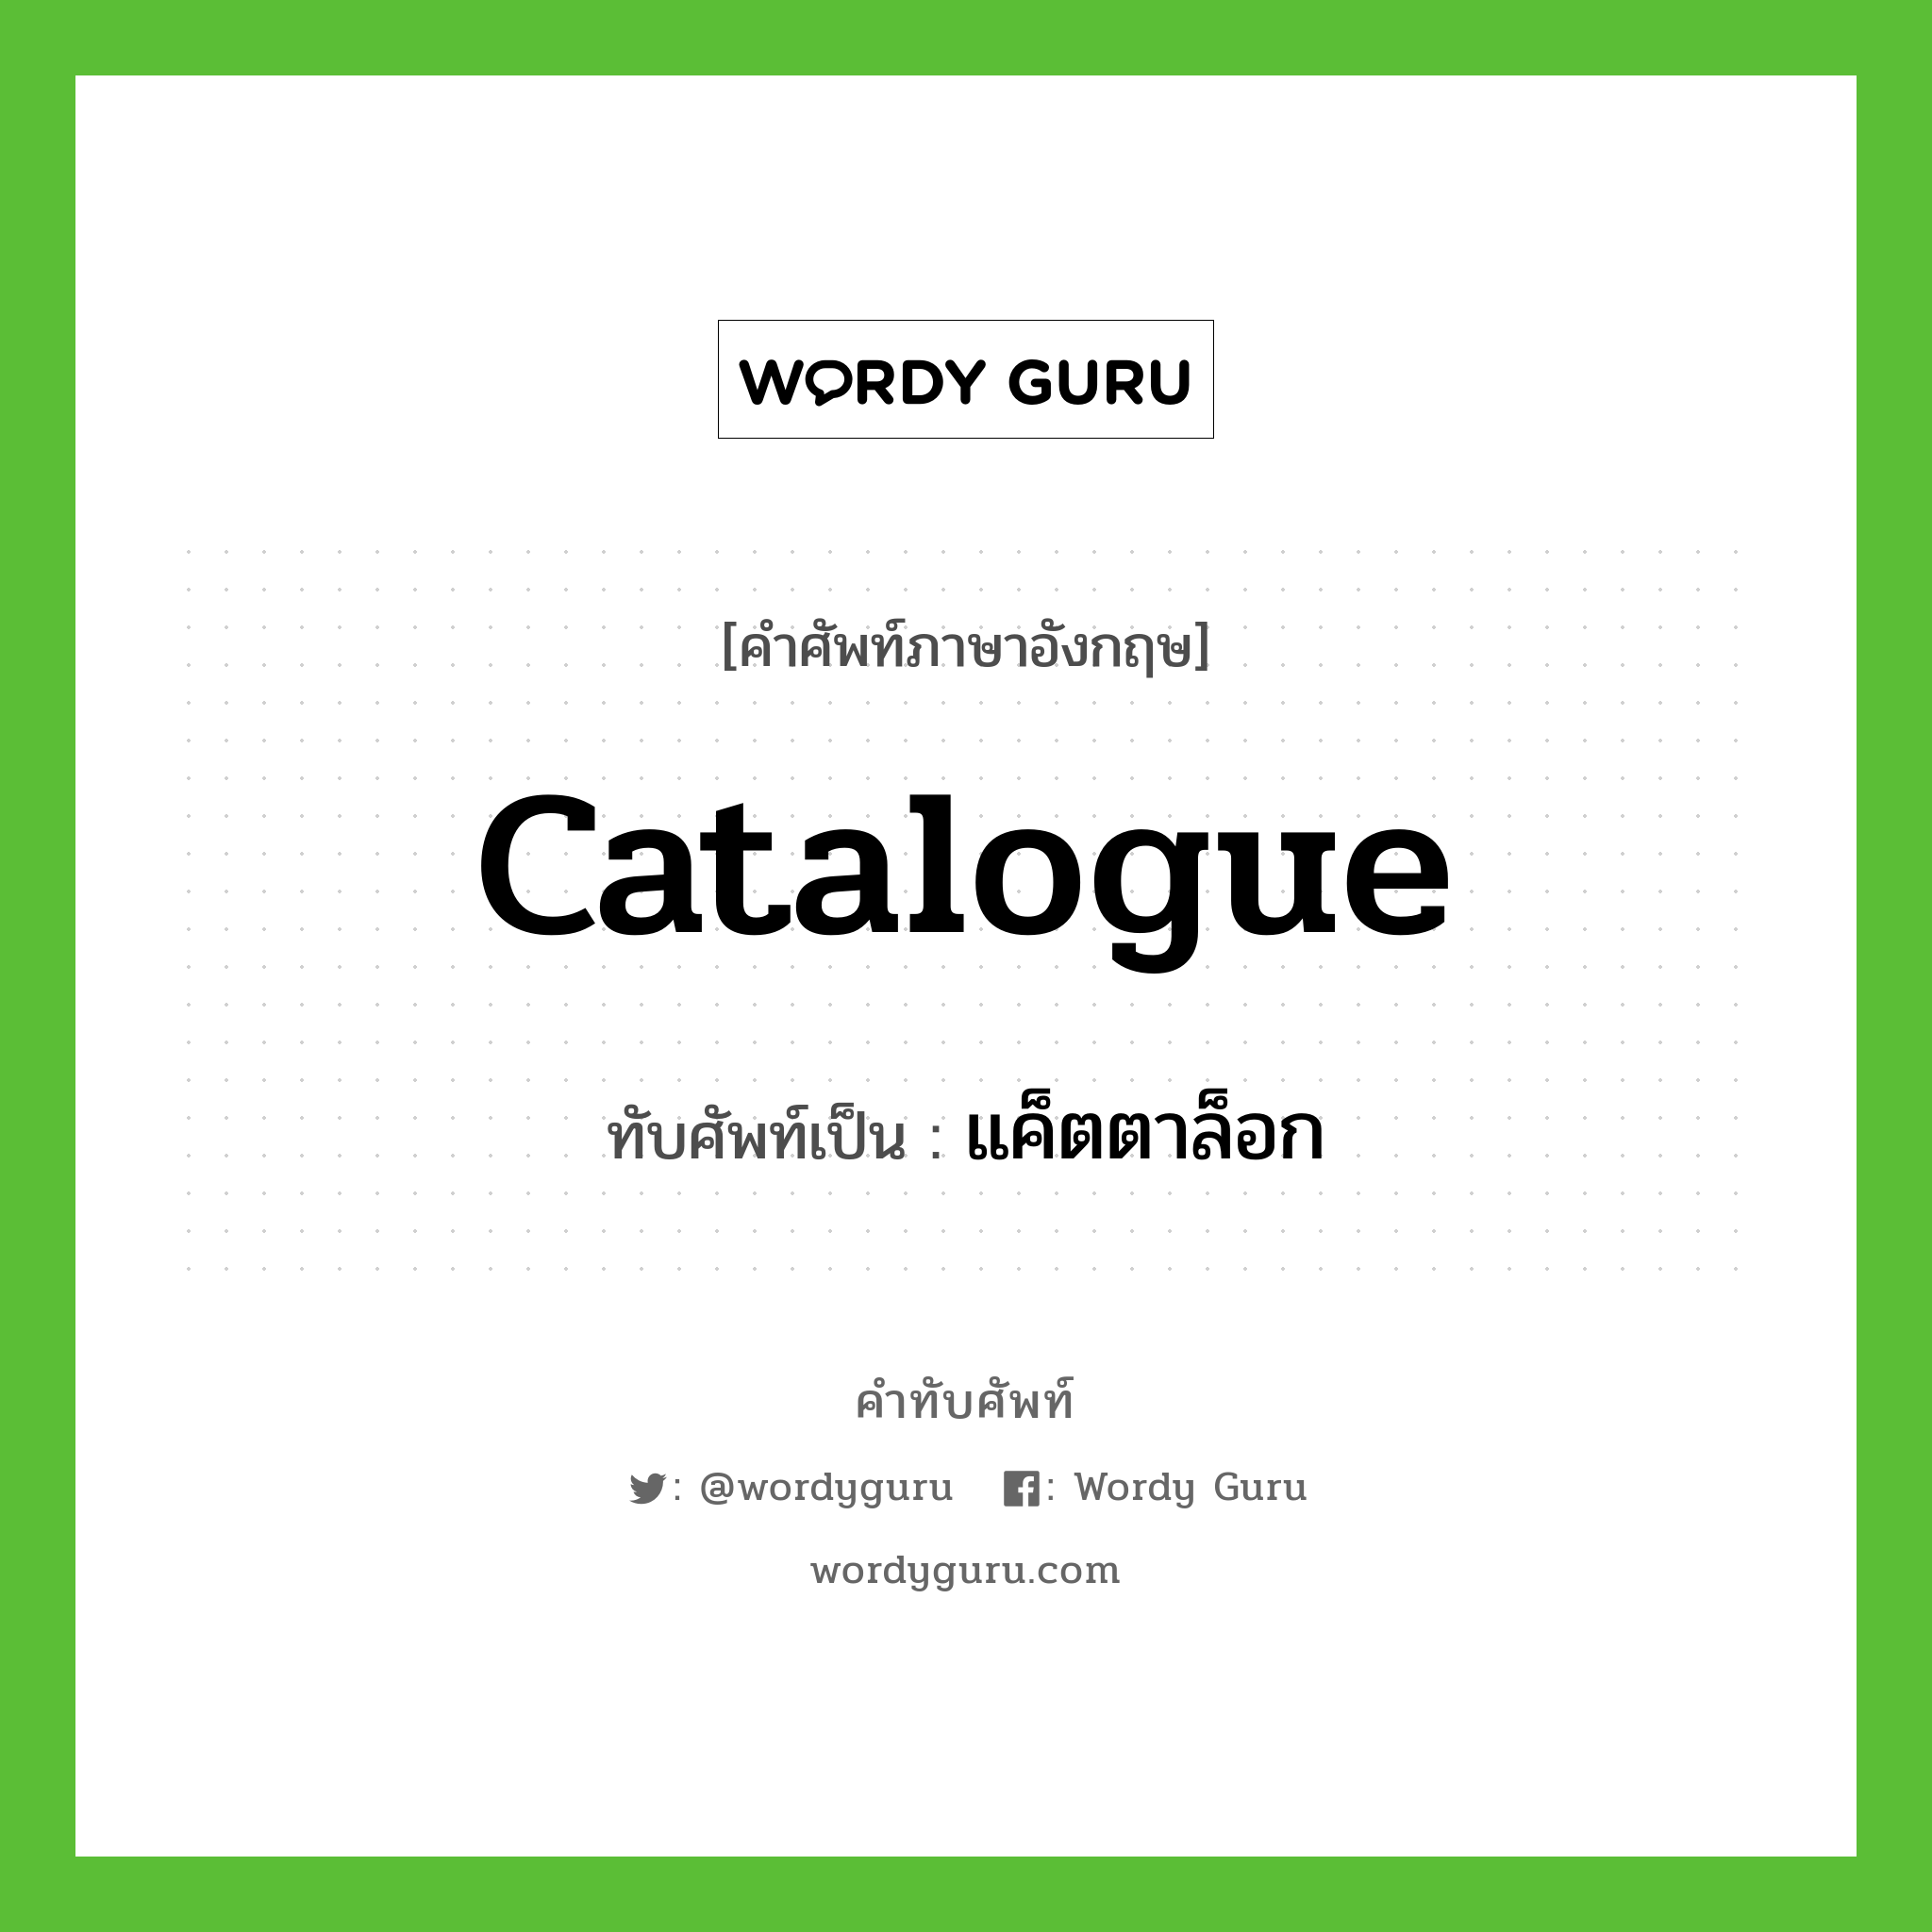 catalogue เขียนเป็นคำไทยว่าอะไร?, คำศัพท์ภาษาอังกฤษ catalogue ทับศัพท์เป็น แค็ตตาล็อก